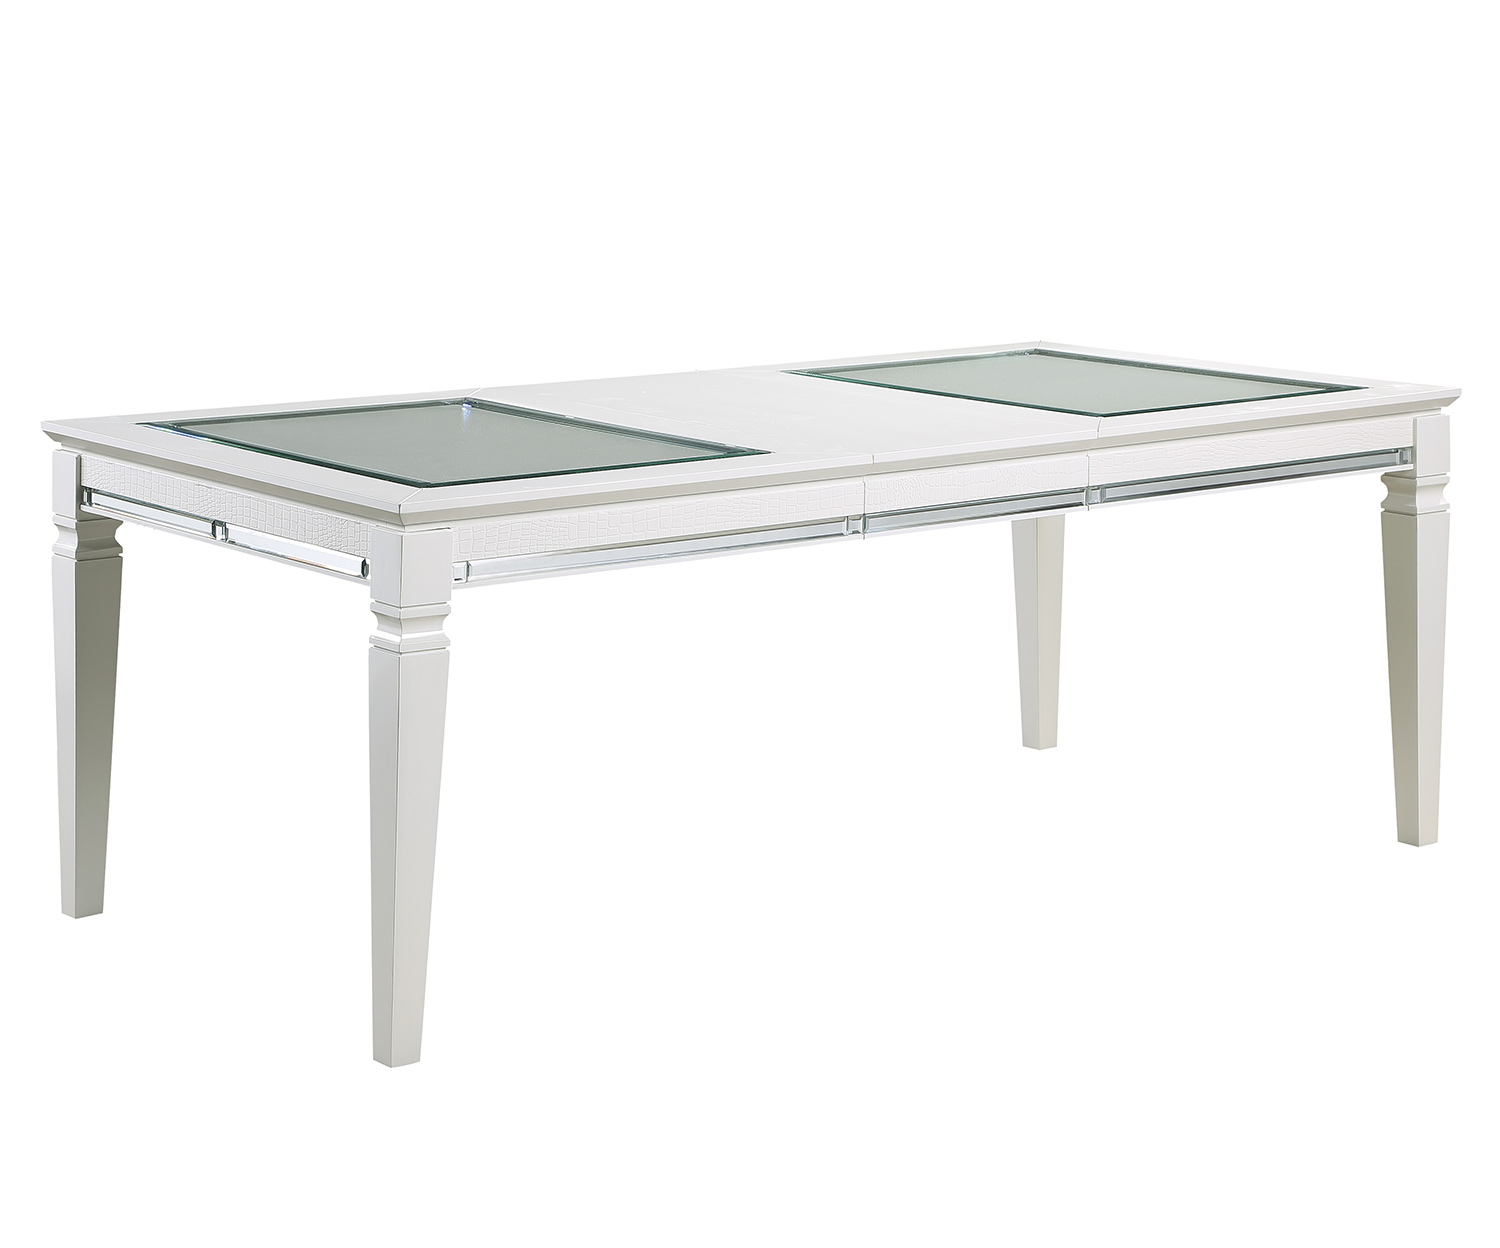 Homelegance Allura Dining Table - White Metallic